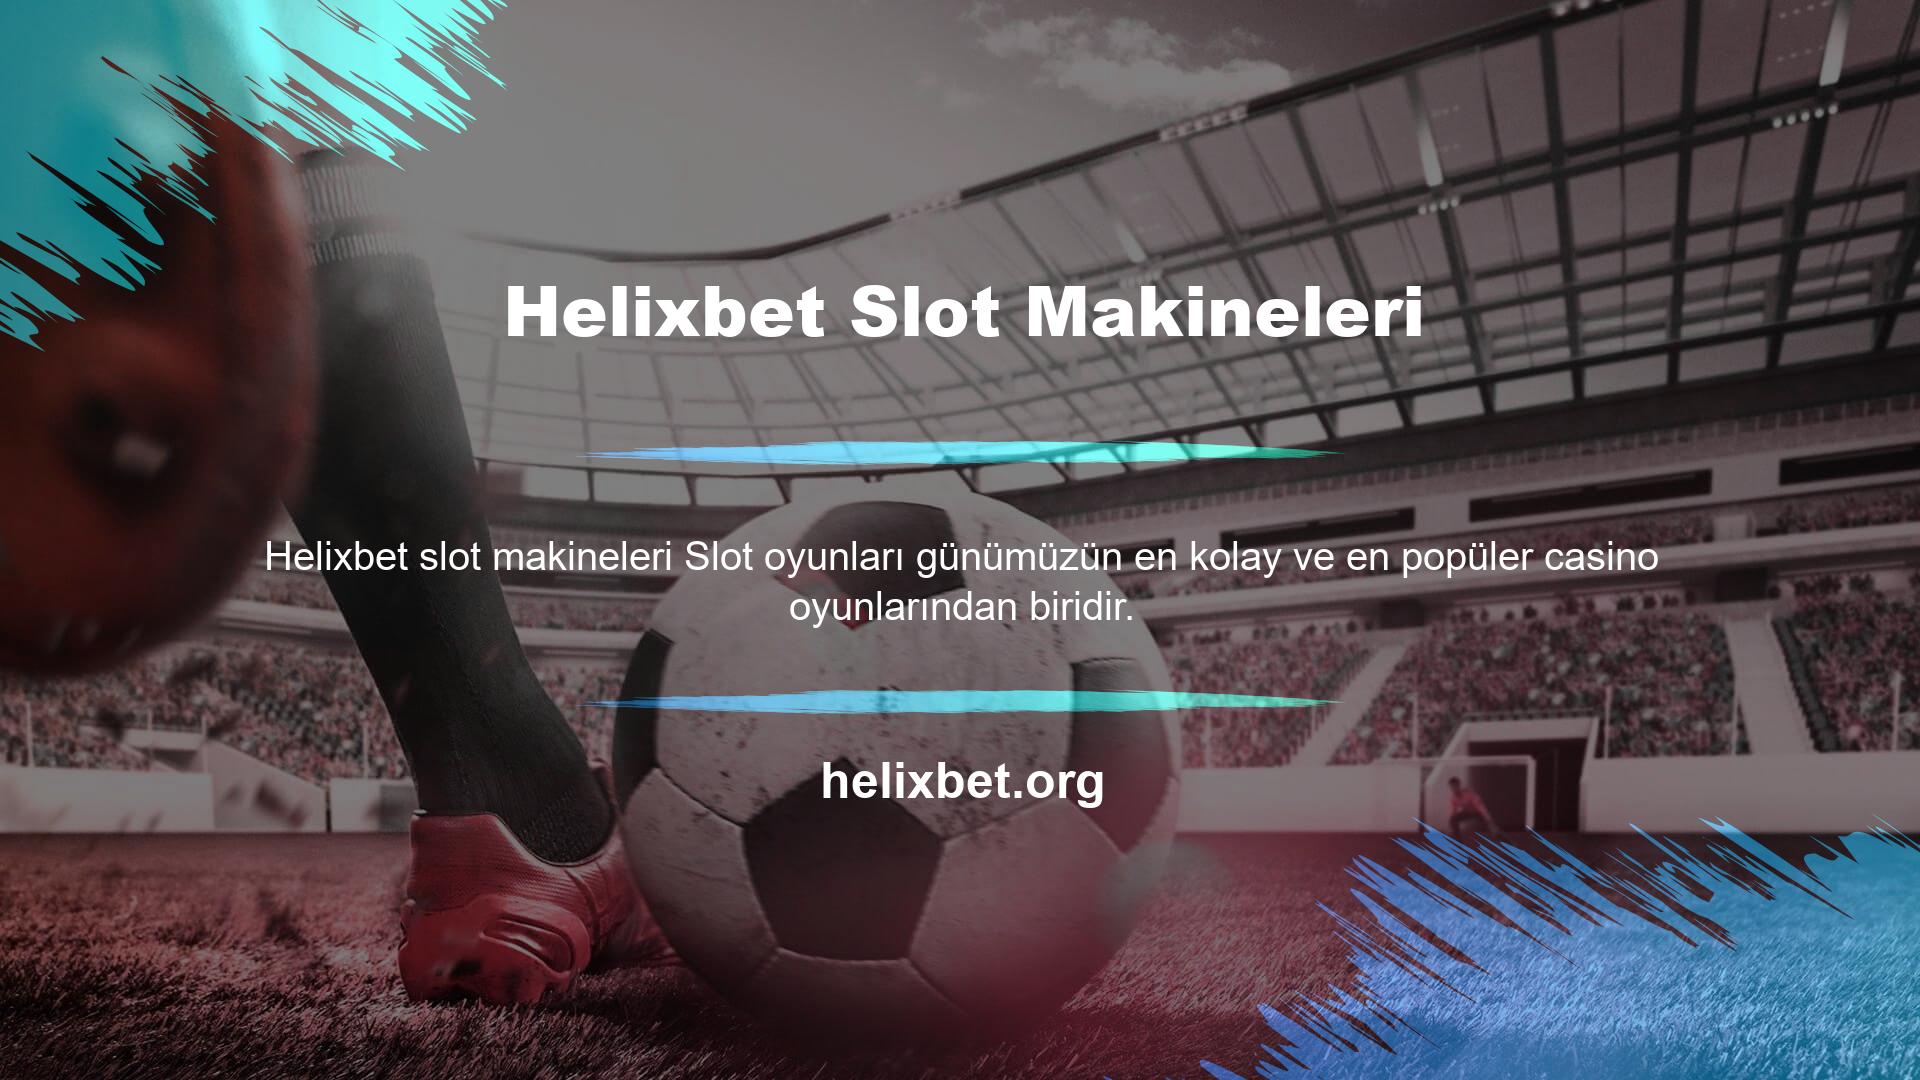 Helixbet slot siteleri, Türkiye'de genellikle premium bir hizmet sunmakta ve birçok öncelikli slot oyunu sunmaktadır